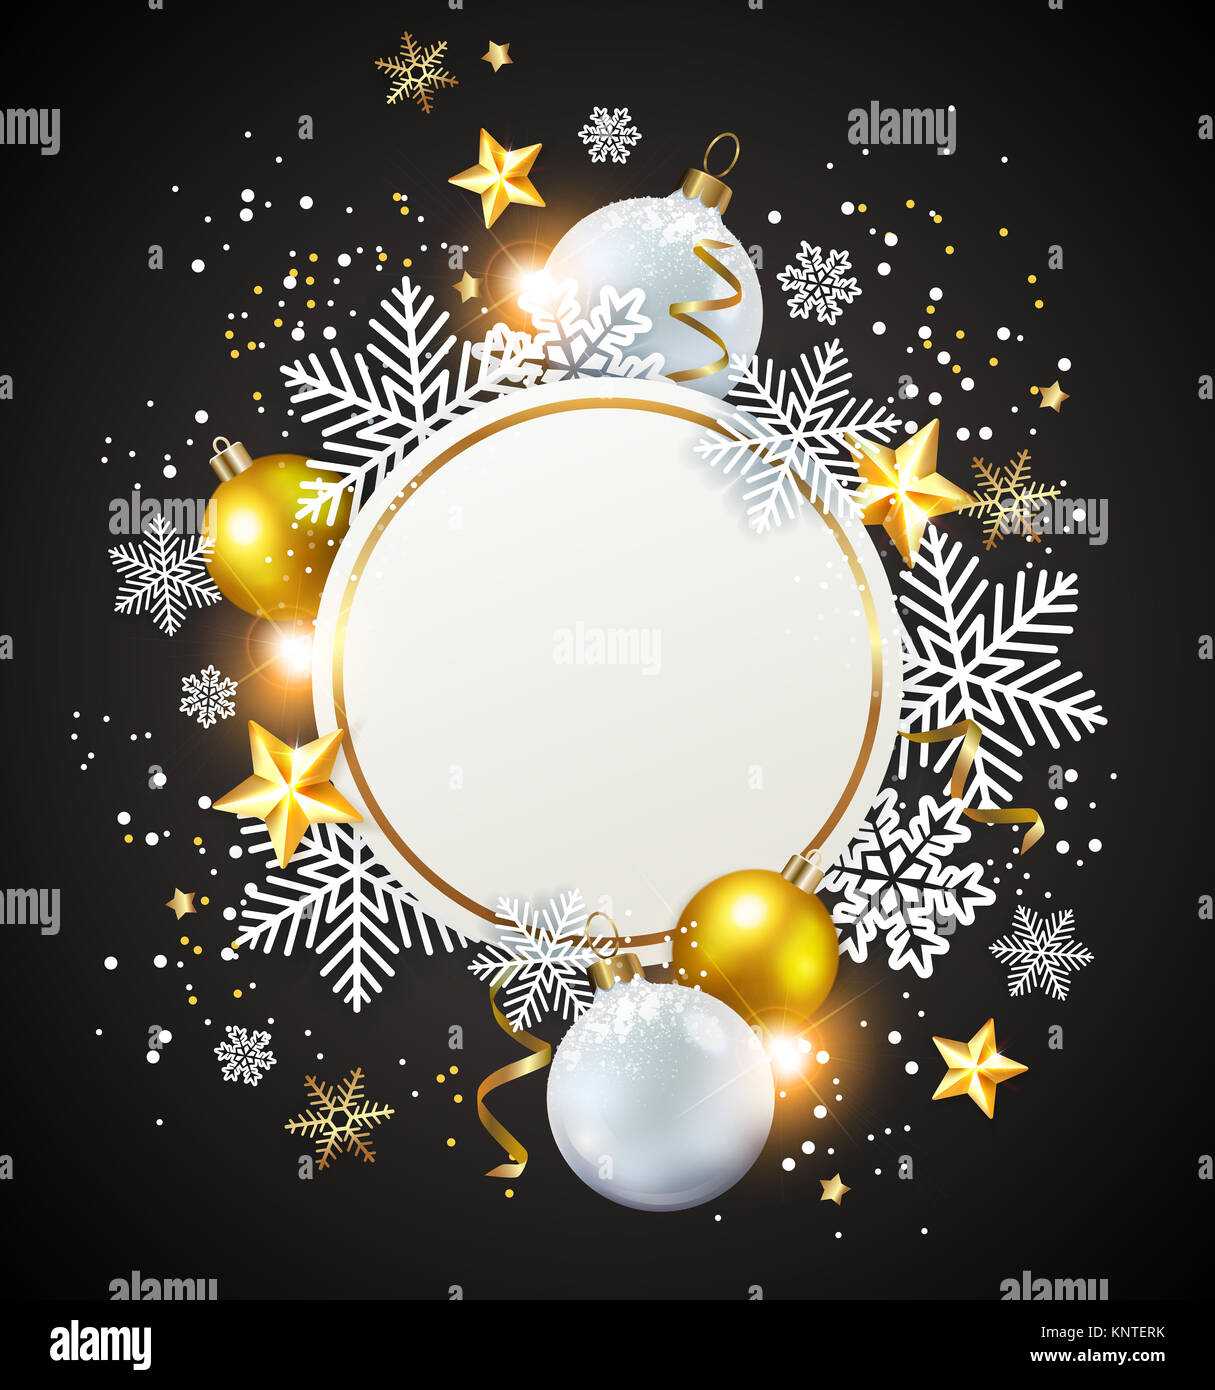 Abstract Natale round banner con i fiocchi di neve. Bianco e decorazioni dorate su uno sfondo nero. Foto Stock